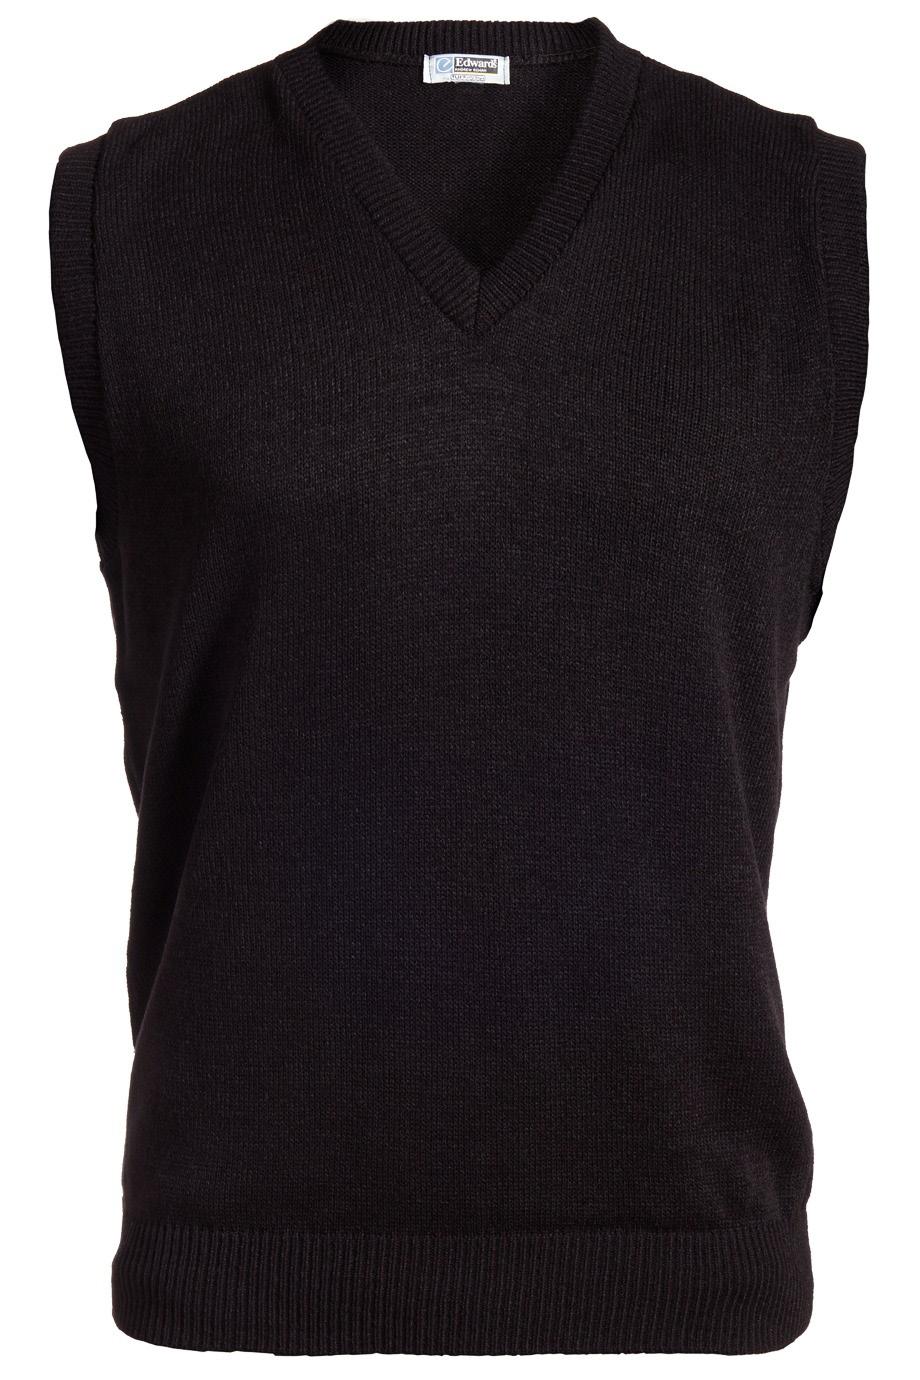 Machine washable Sizes: S-5XL Unisex V-Neck Sweater Vest Item #: 561 100% Acrylic V-neck jersey